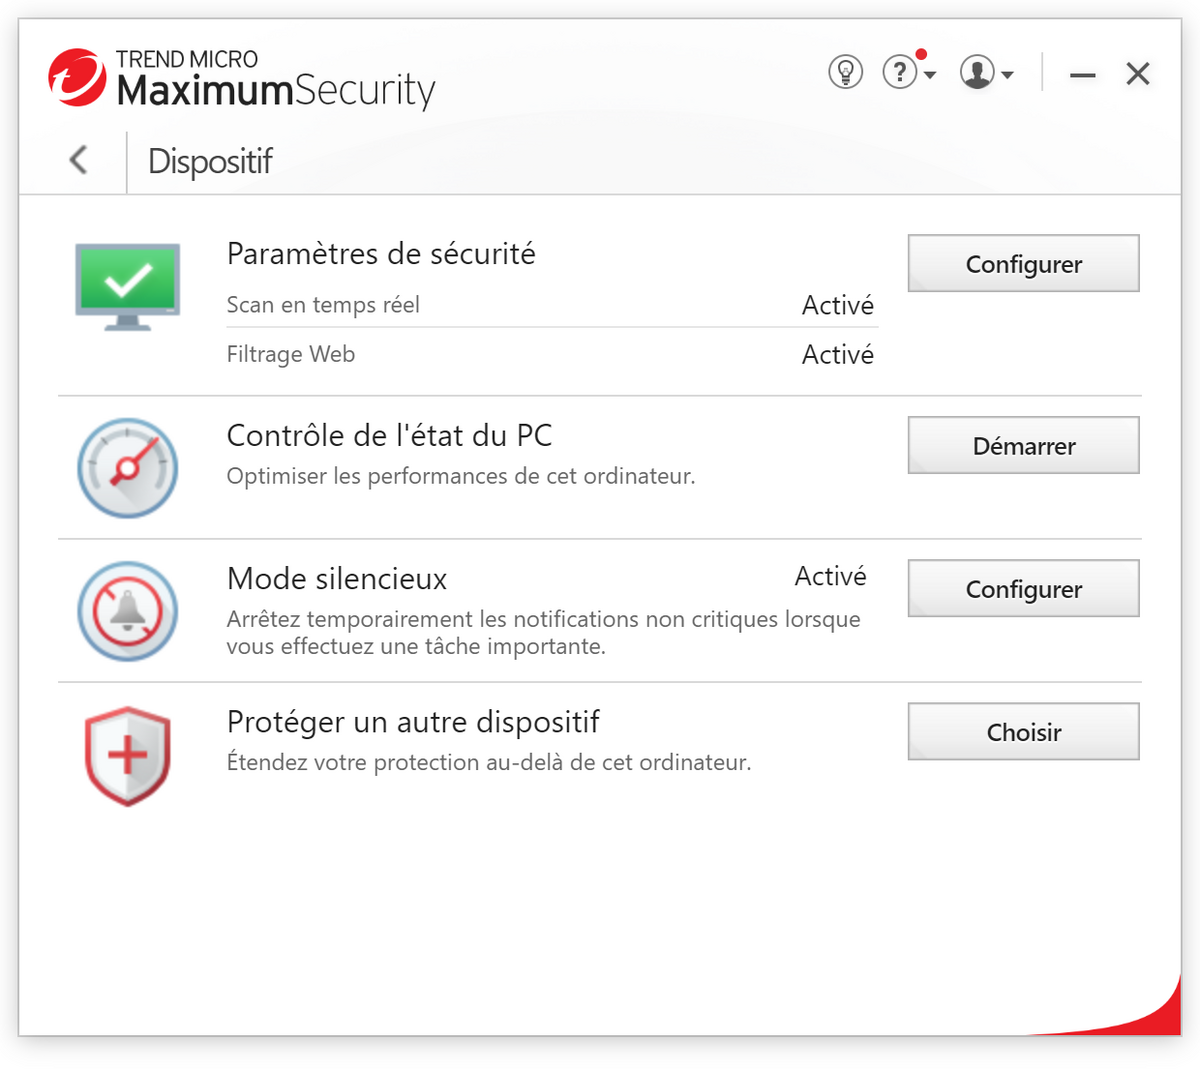 Trend Micro Maximum Security - Configuration